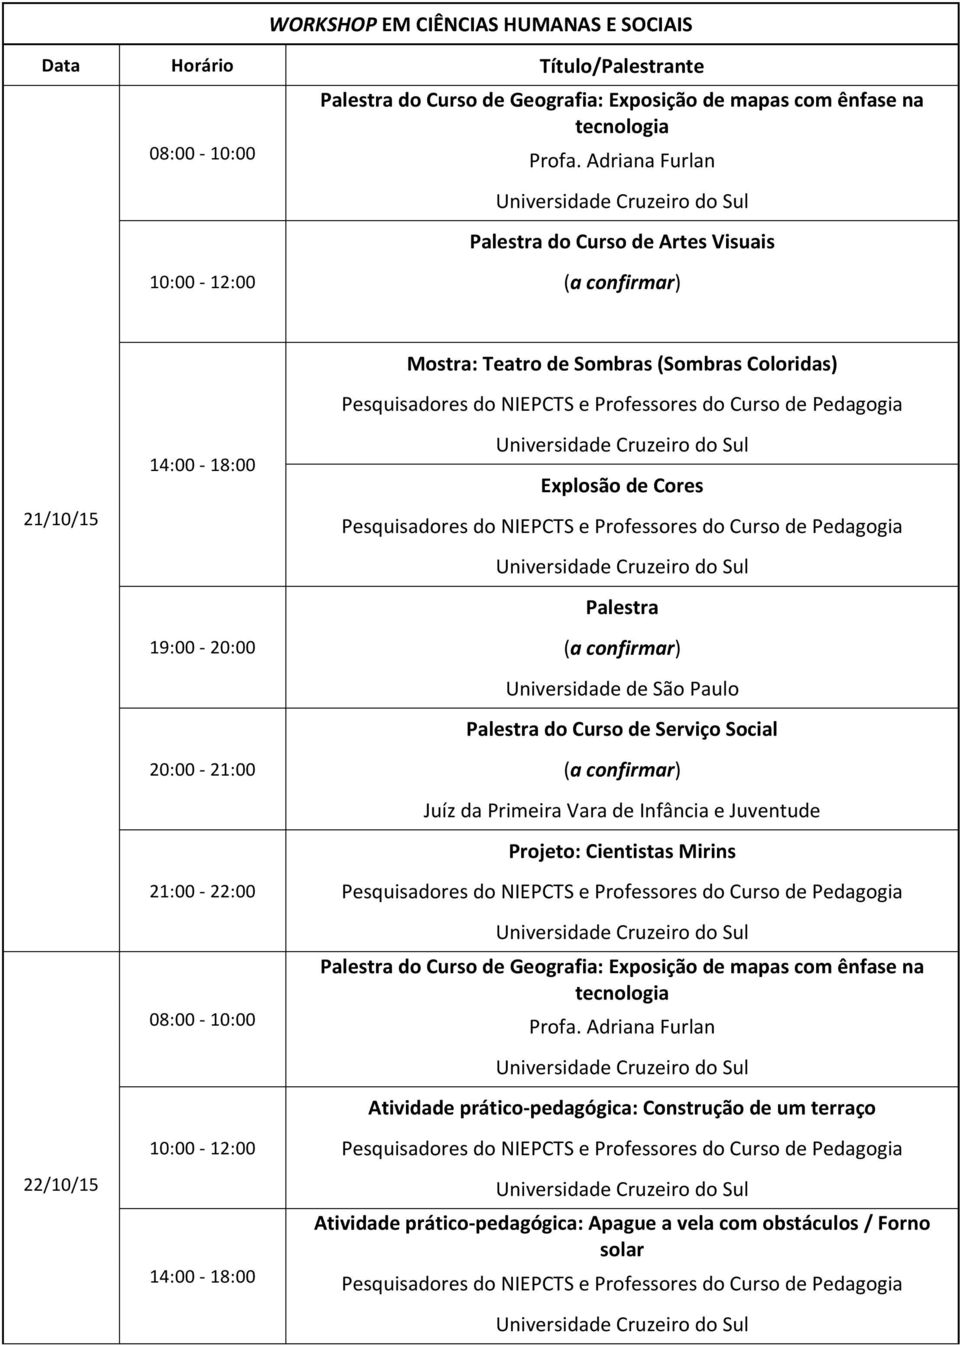 14:00-18:00 Explosão de Cores Palestra Universidade de São Paulo Palestra do Curso de Serviço Social Juíz da Primeira Vara de Infância e Juventude Projeto: Cientistas Mirins